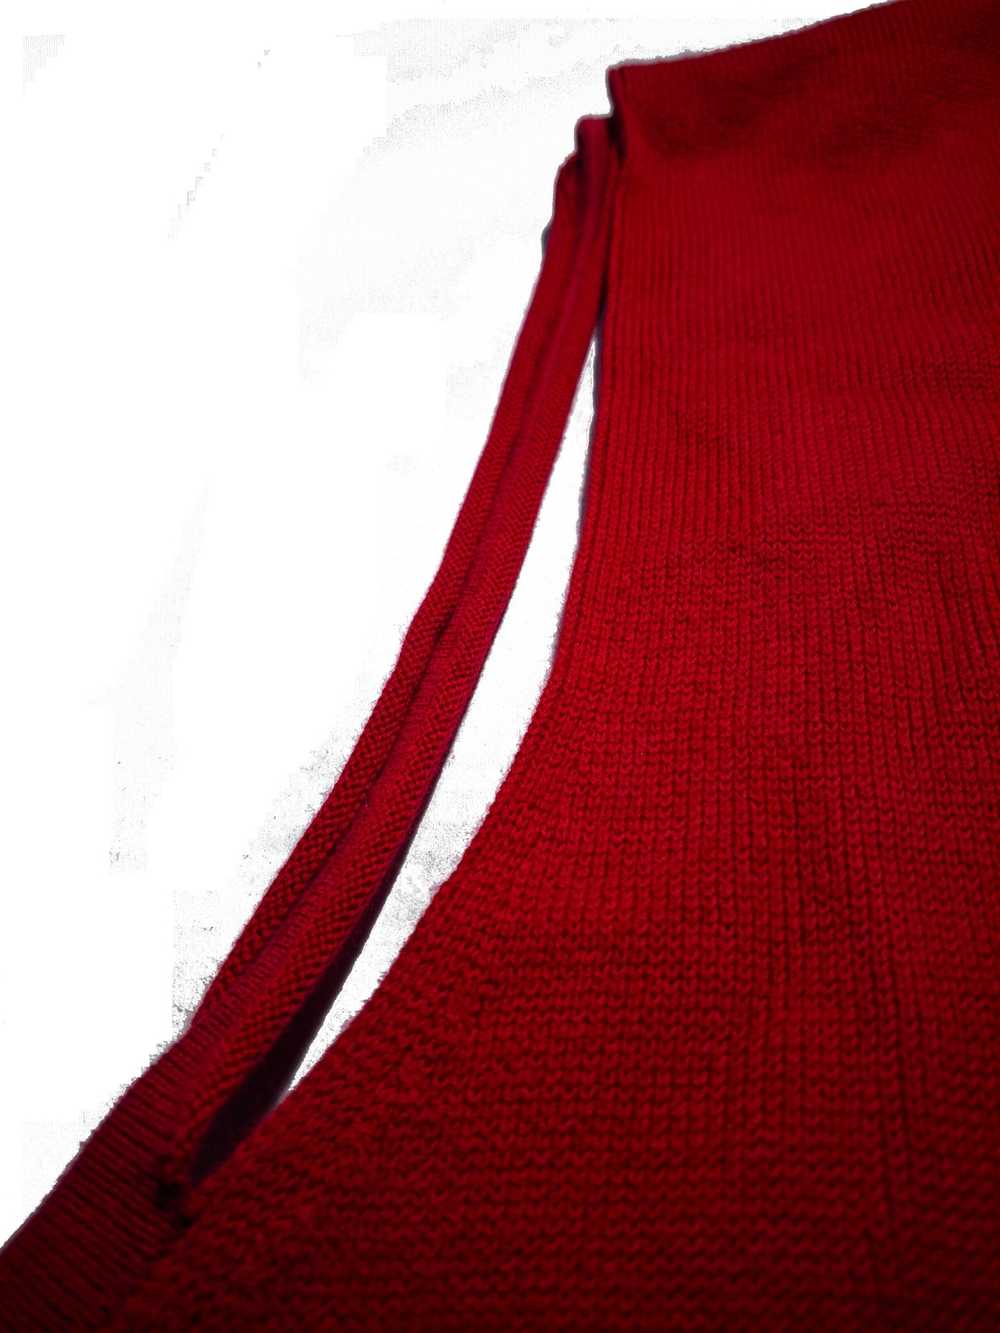 Tommy Hilfiger Large Red Vintage 1990s Embroidere… - image 4